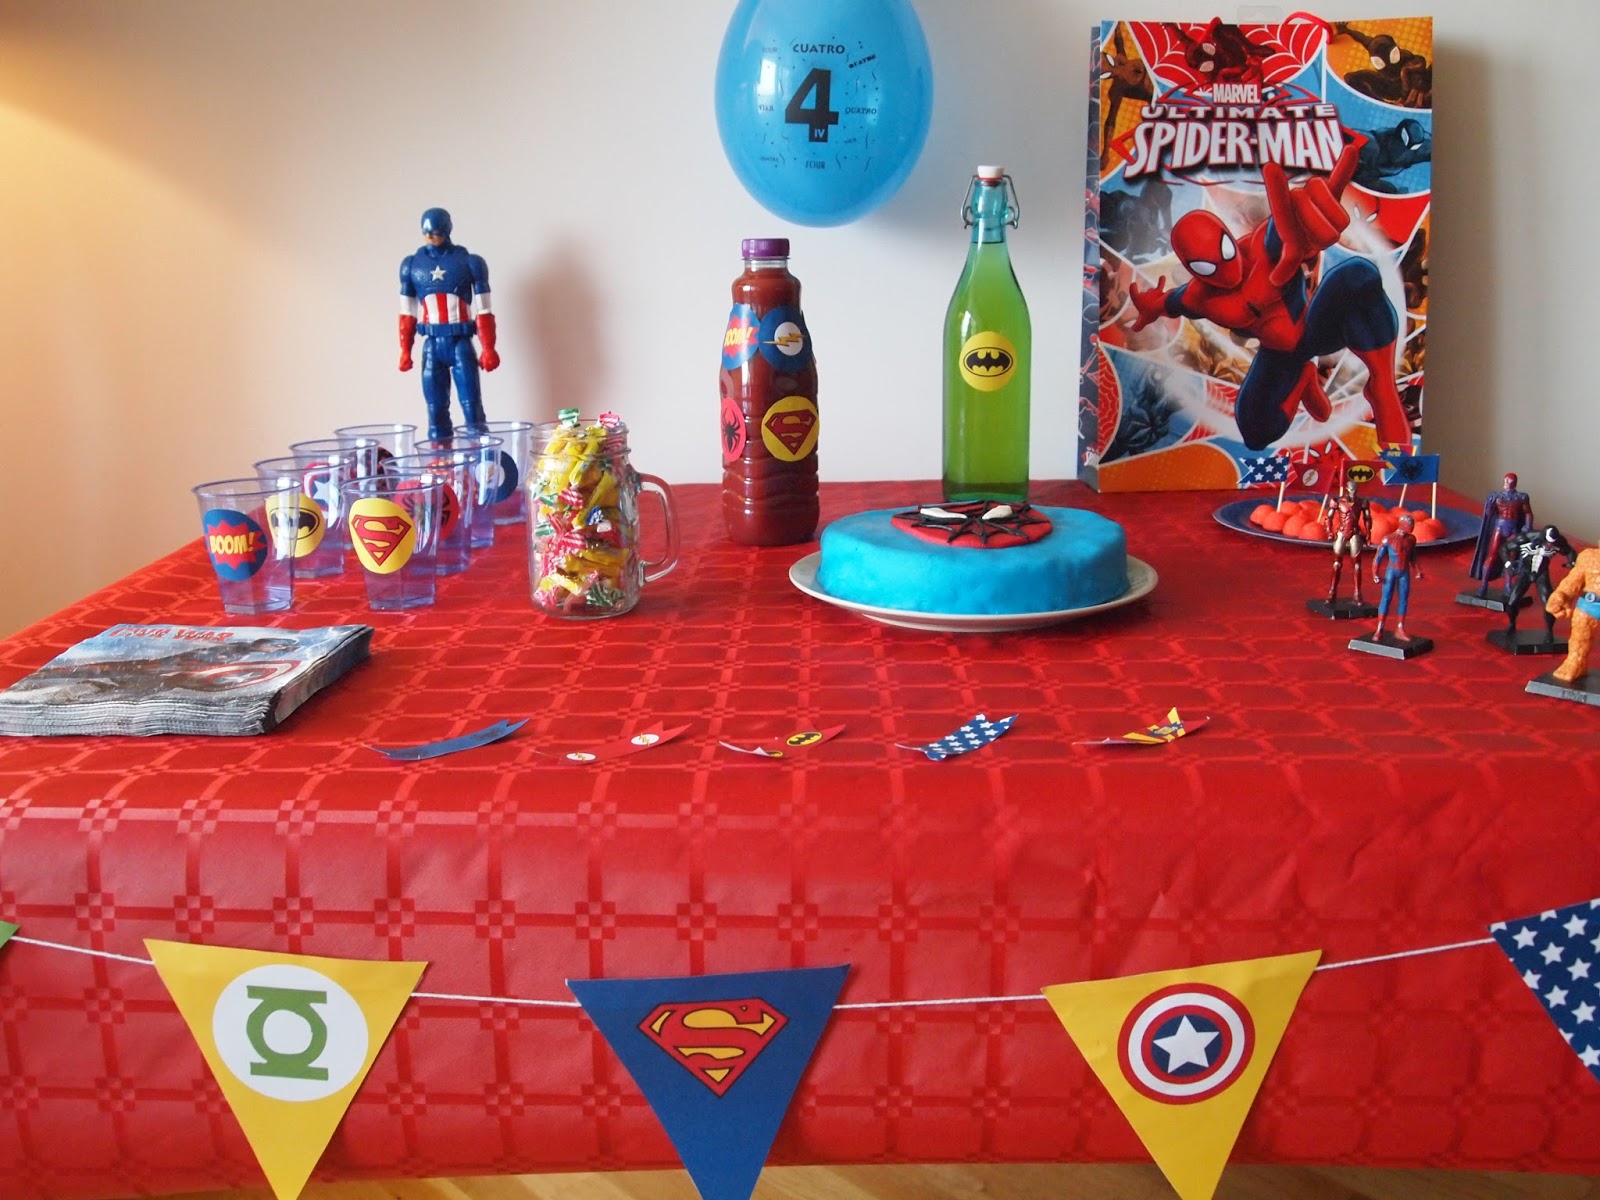 Organiser un anniversaire d'enfant à la maison sur le thème de Spider-man